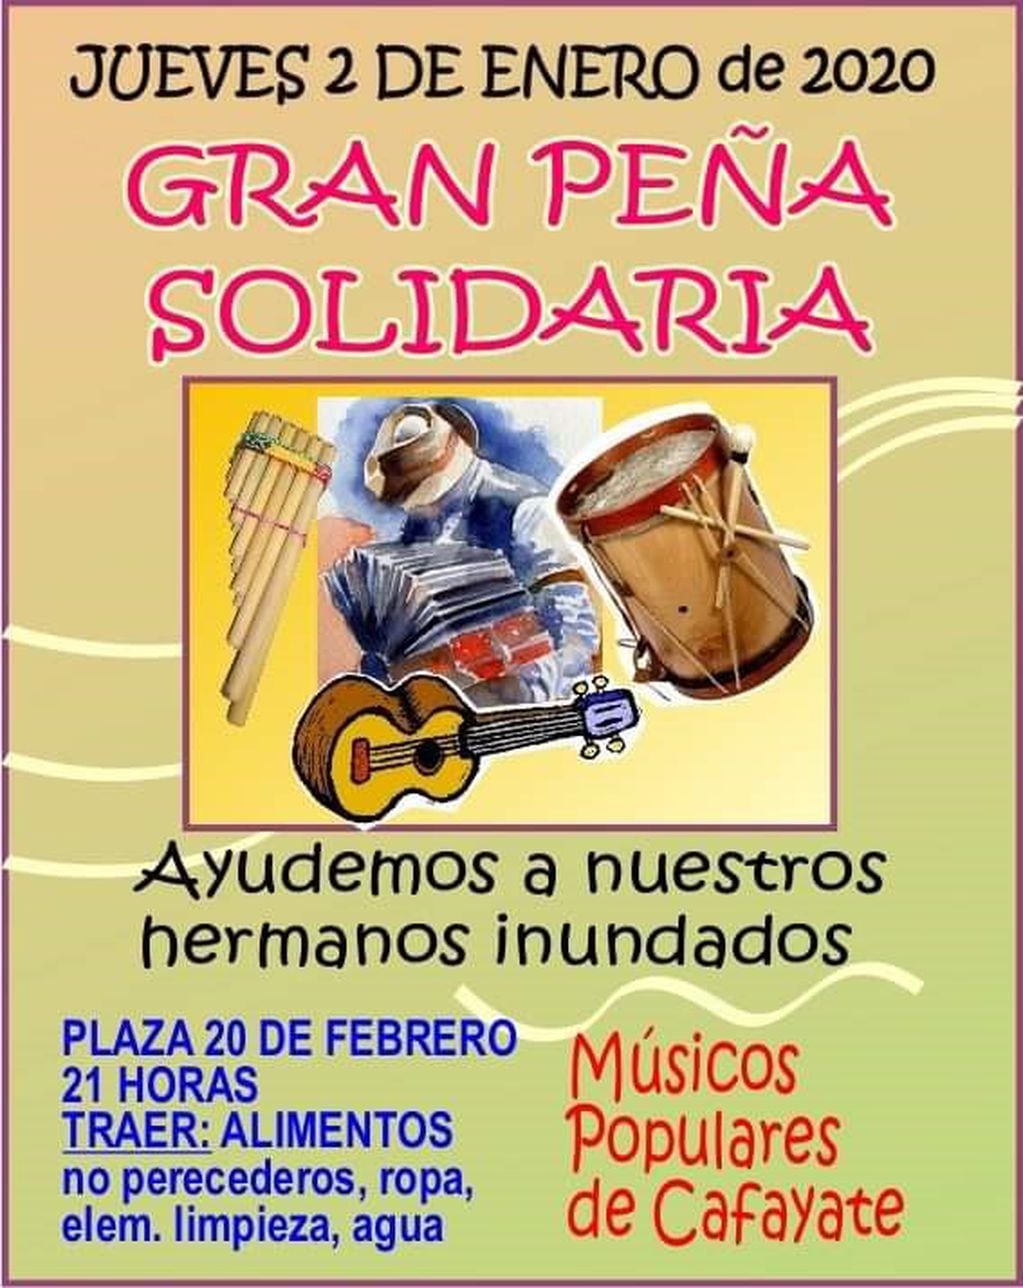 Peña solidaria por Cafayate (Facebook Lautaro D'amico)